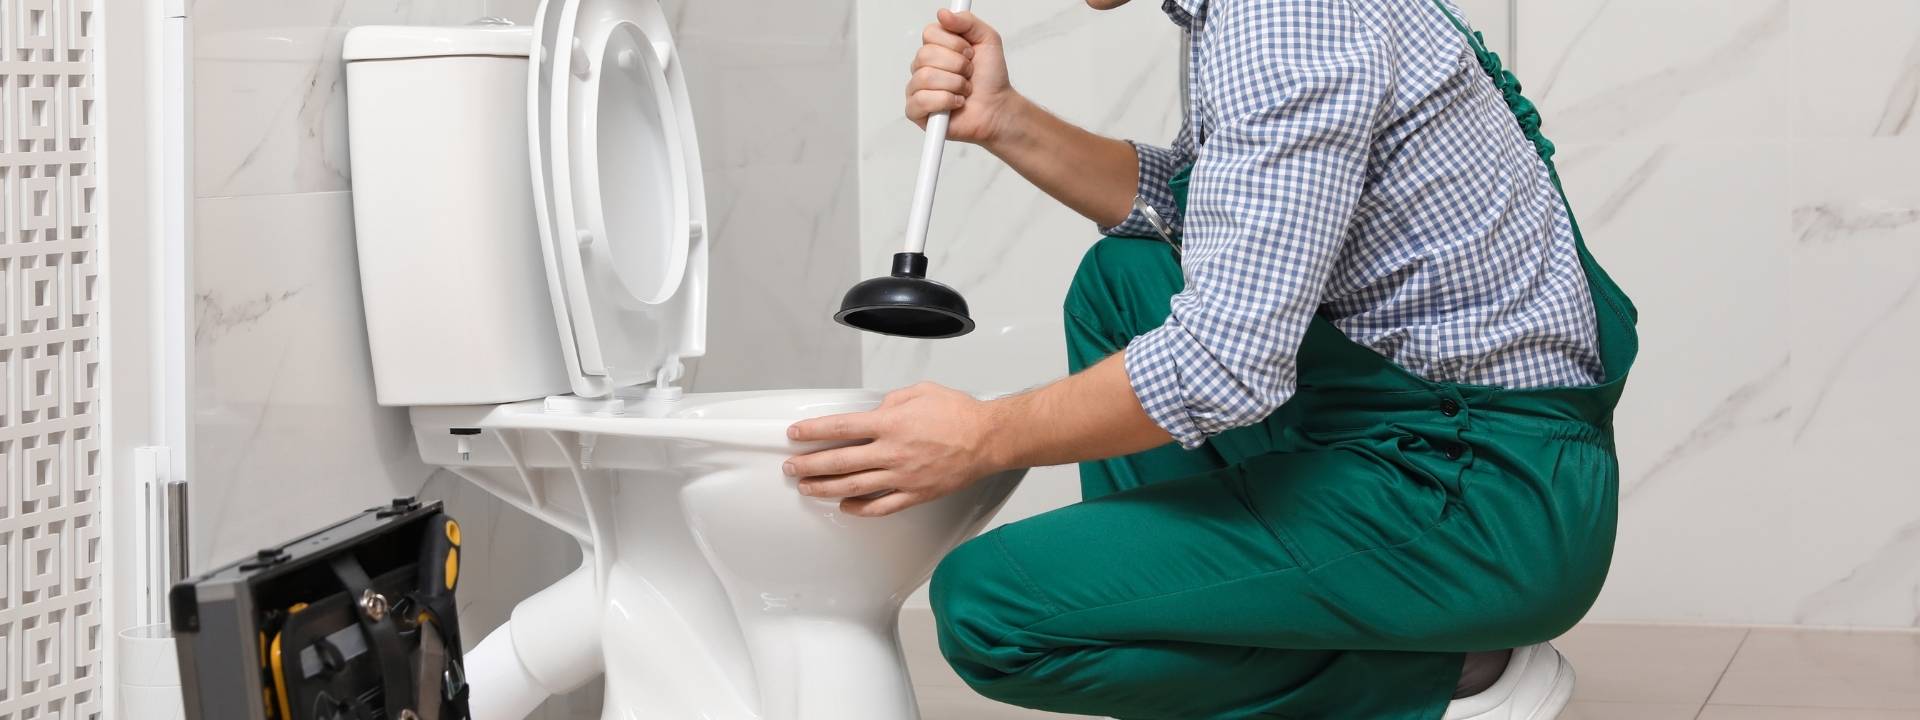 Débouchage canalisation respect règles d'hygiène à Bourg-en-Bresse